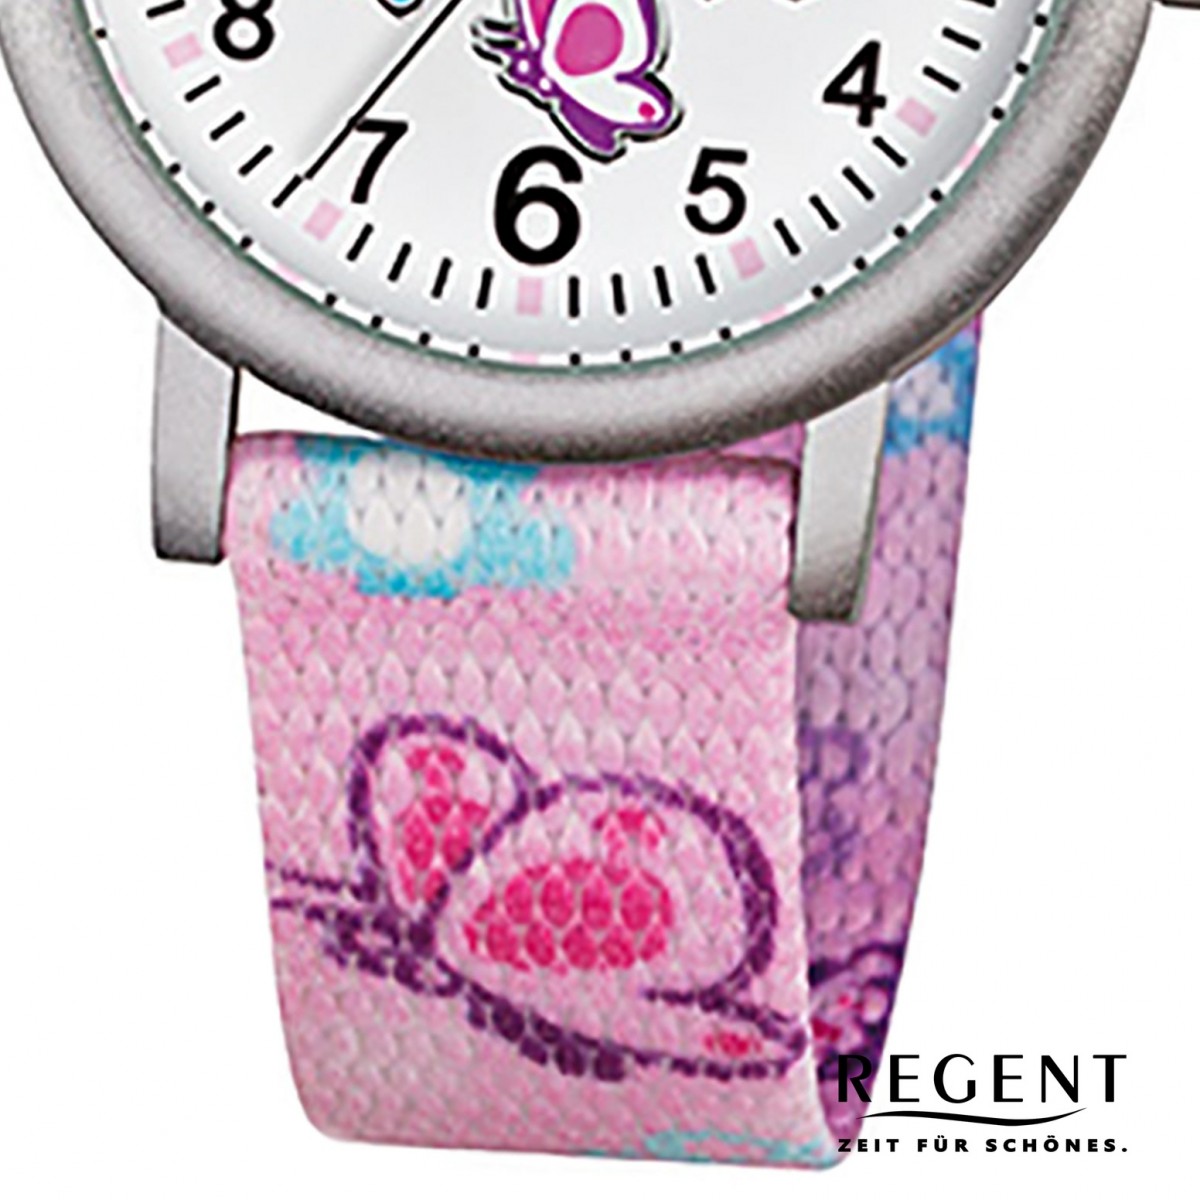 Regent Kinder-Armbanduhr - Schmetterling - Quarz Textil rosa Mädchen Uhr  URF491